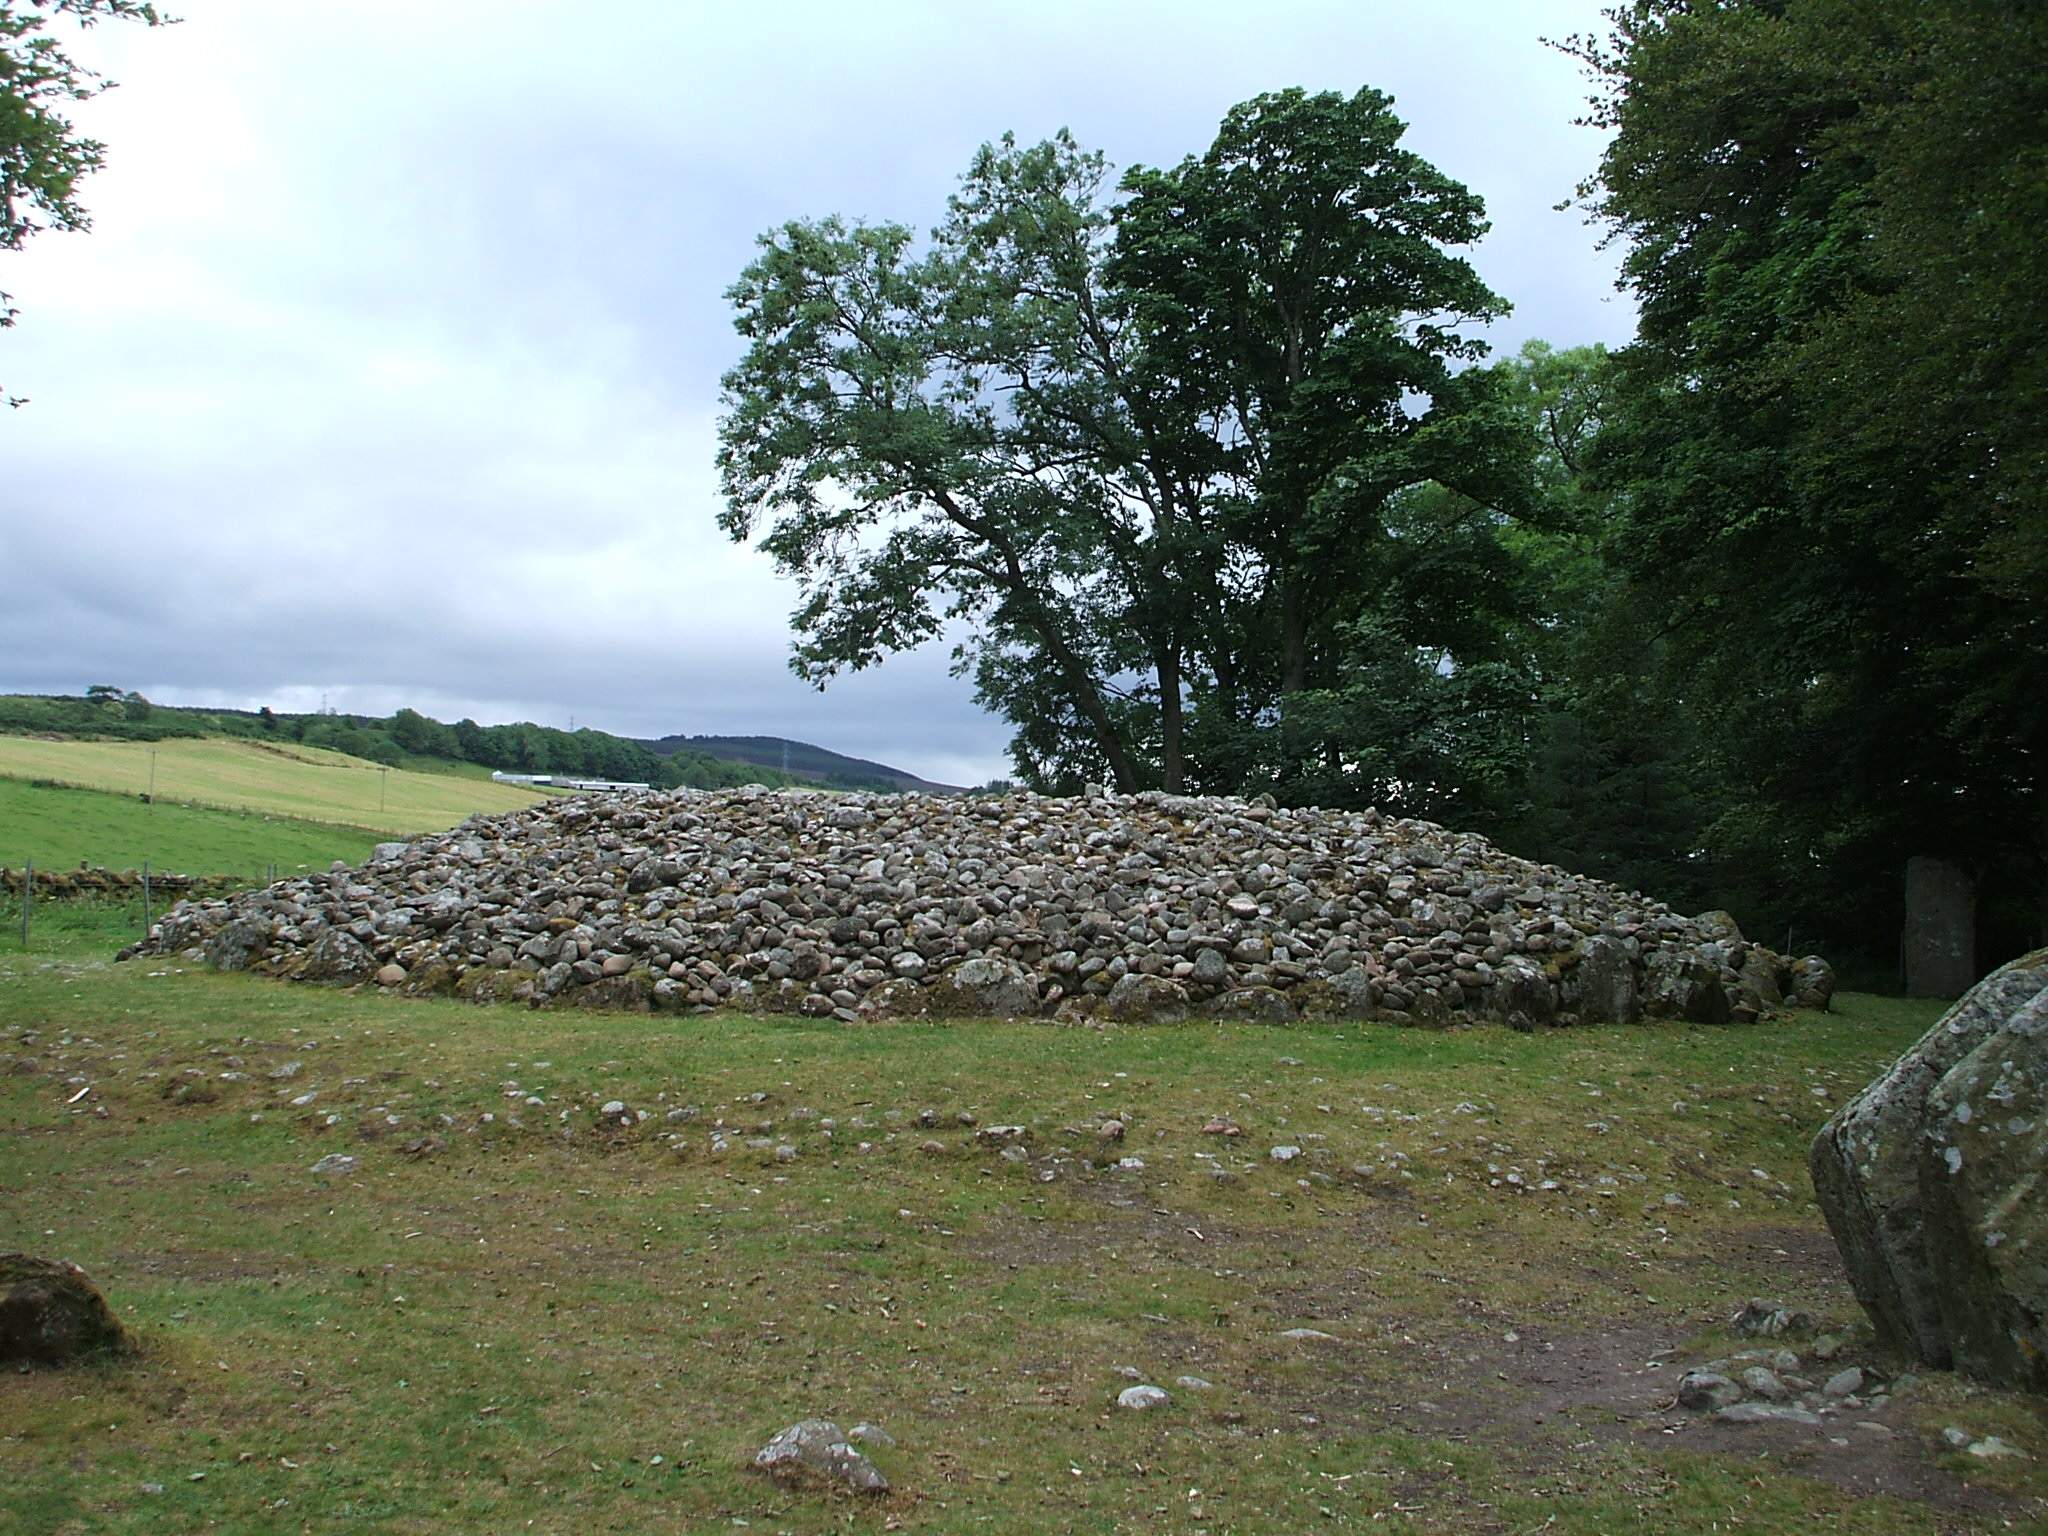 a pile of rocks near many trees